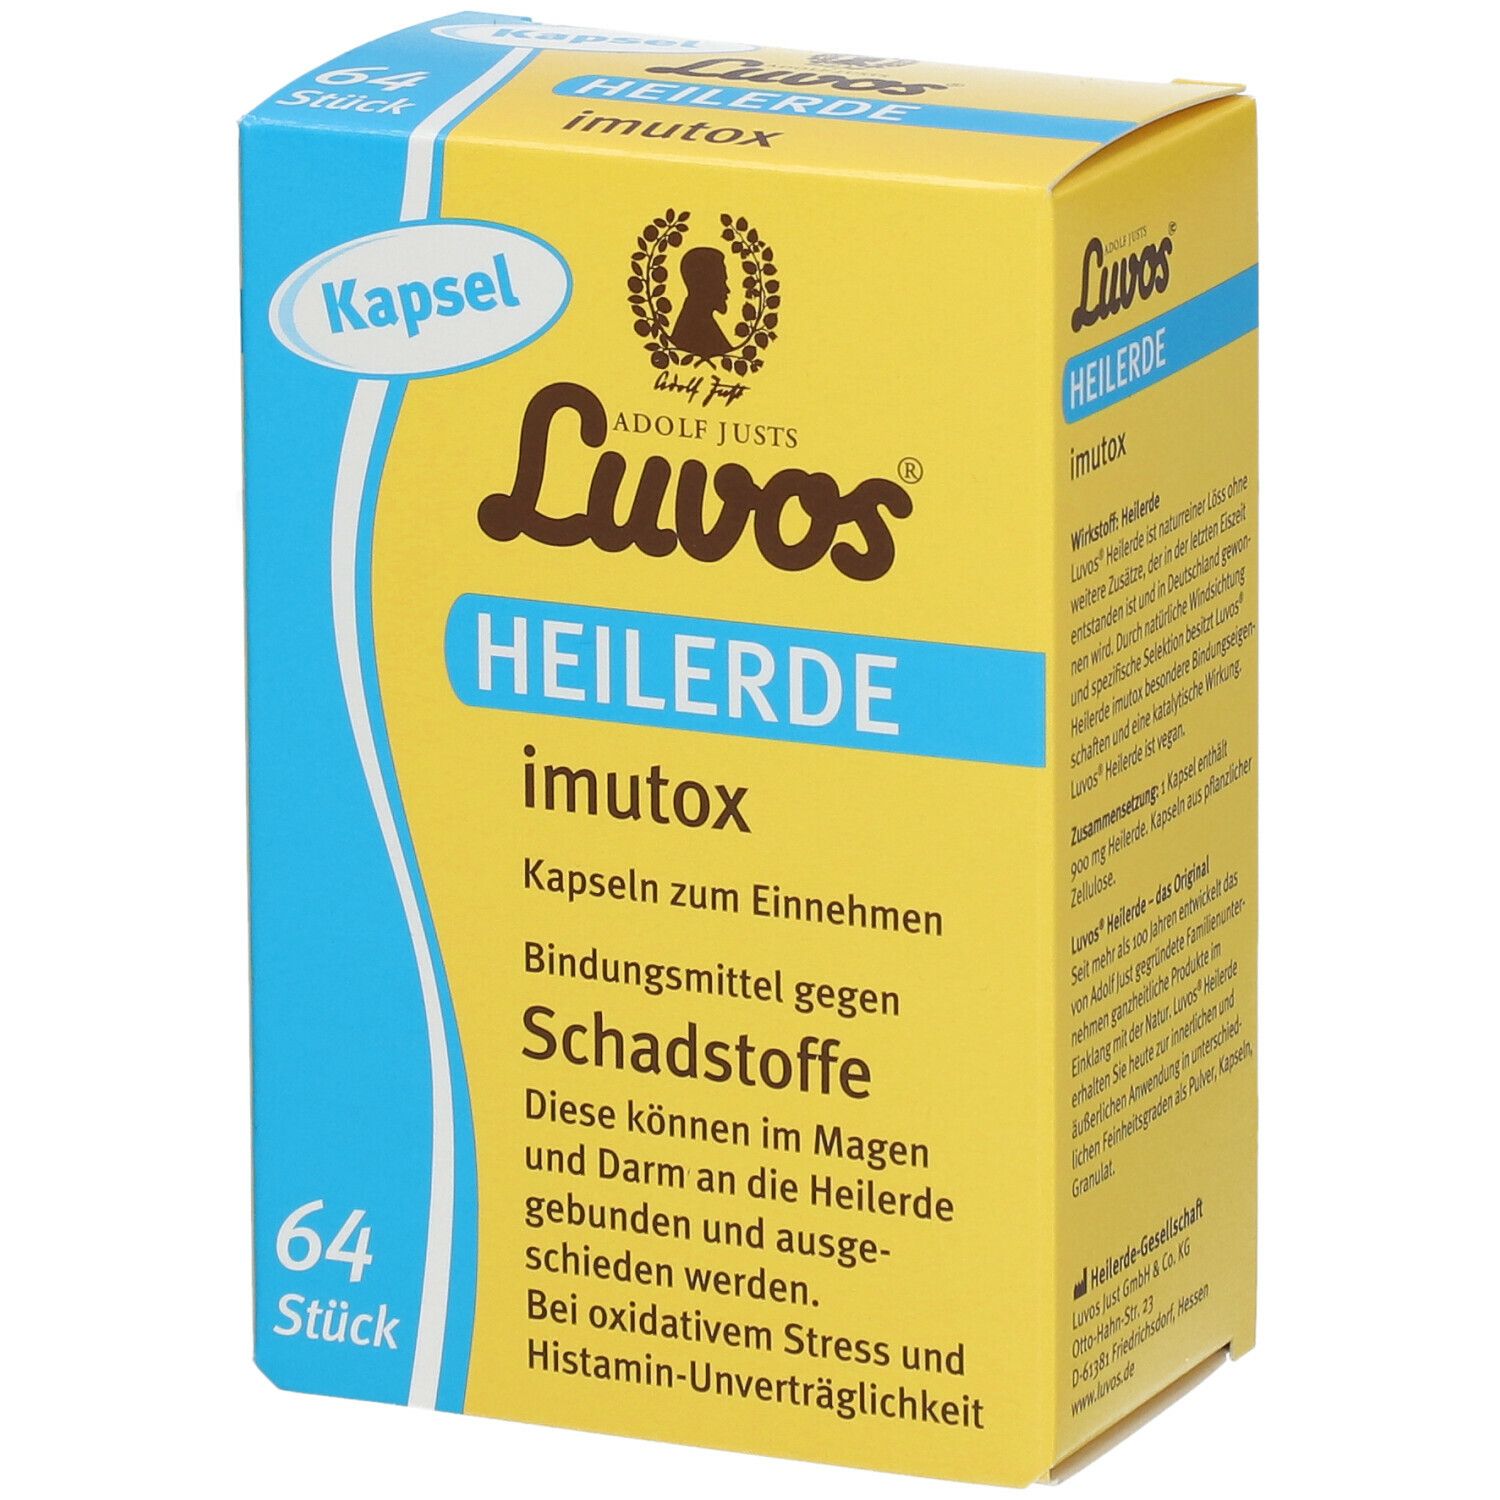 Luvos-Heilerde imutox